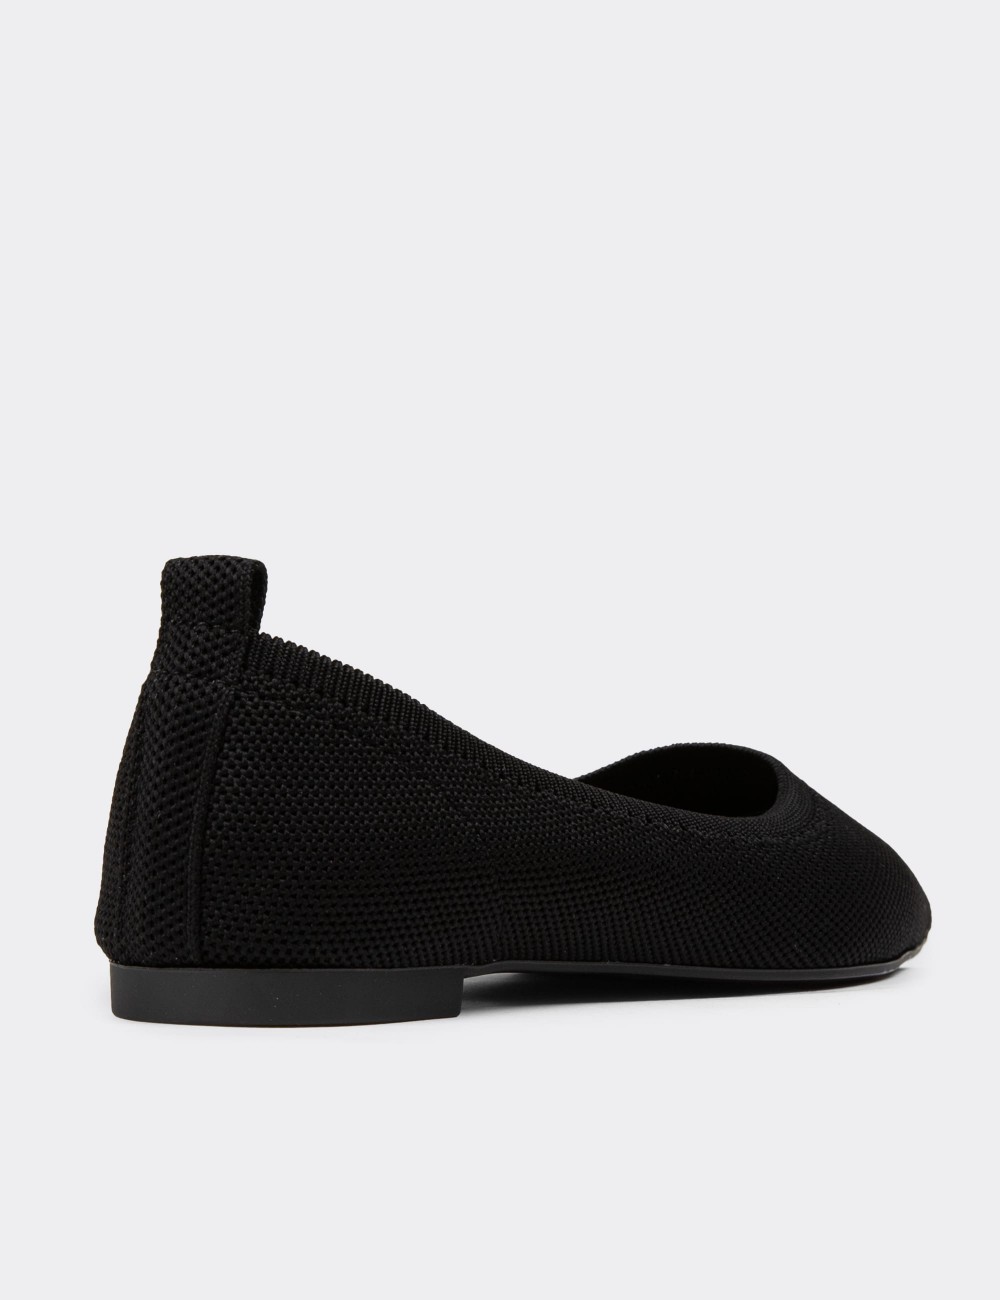 Black Loafers - K2348ZSYHC01